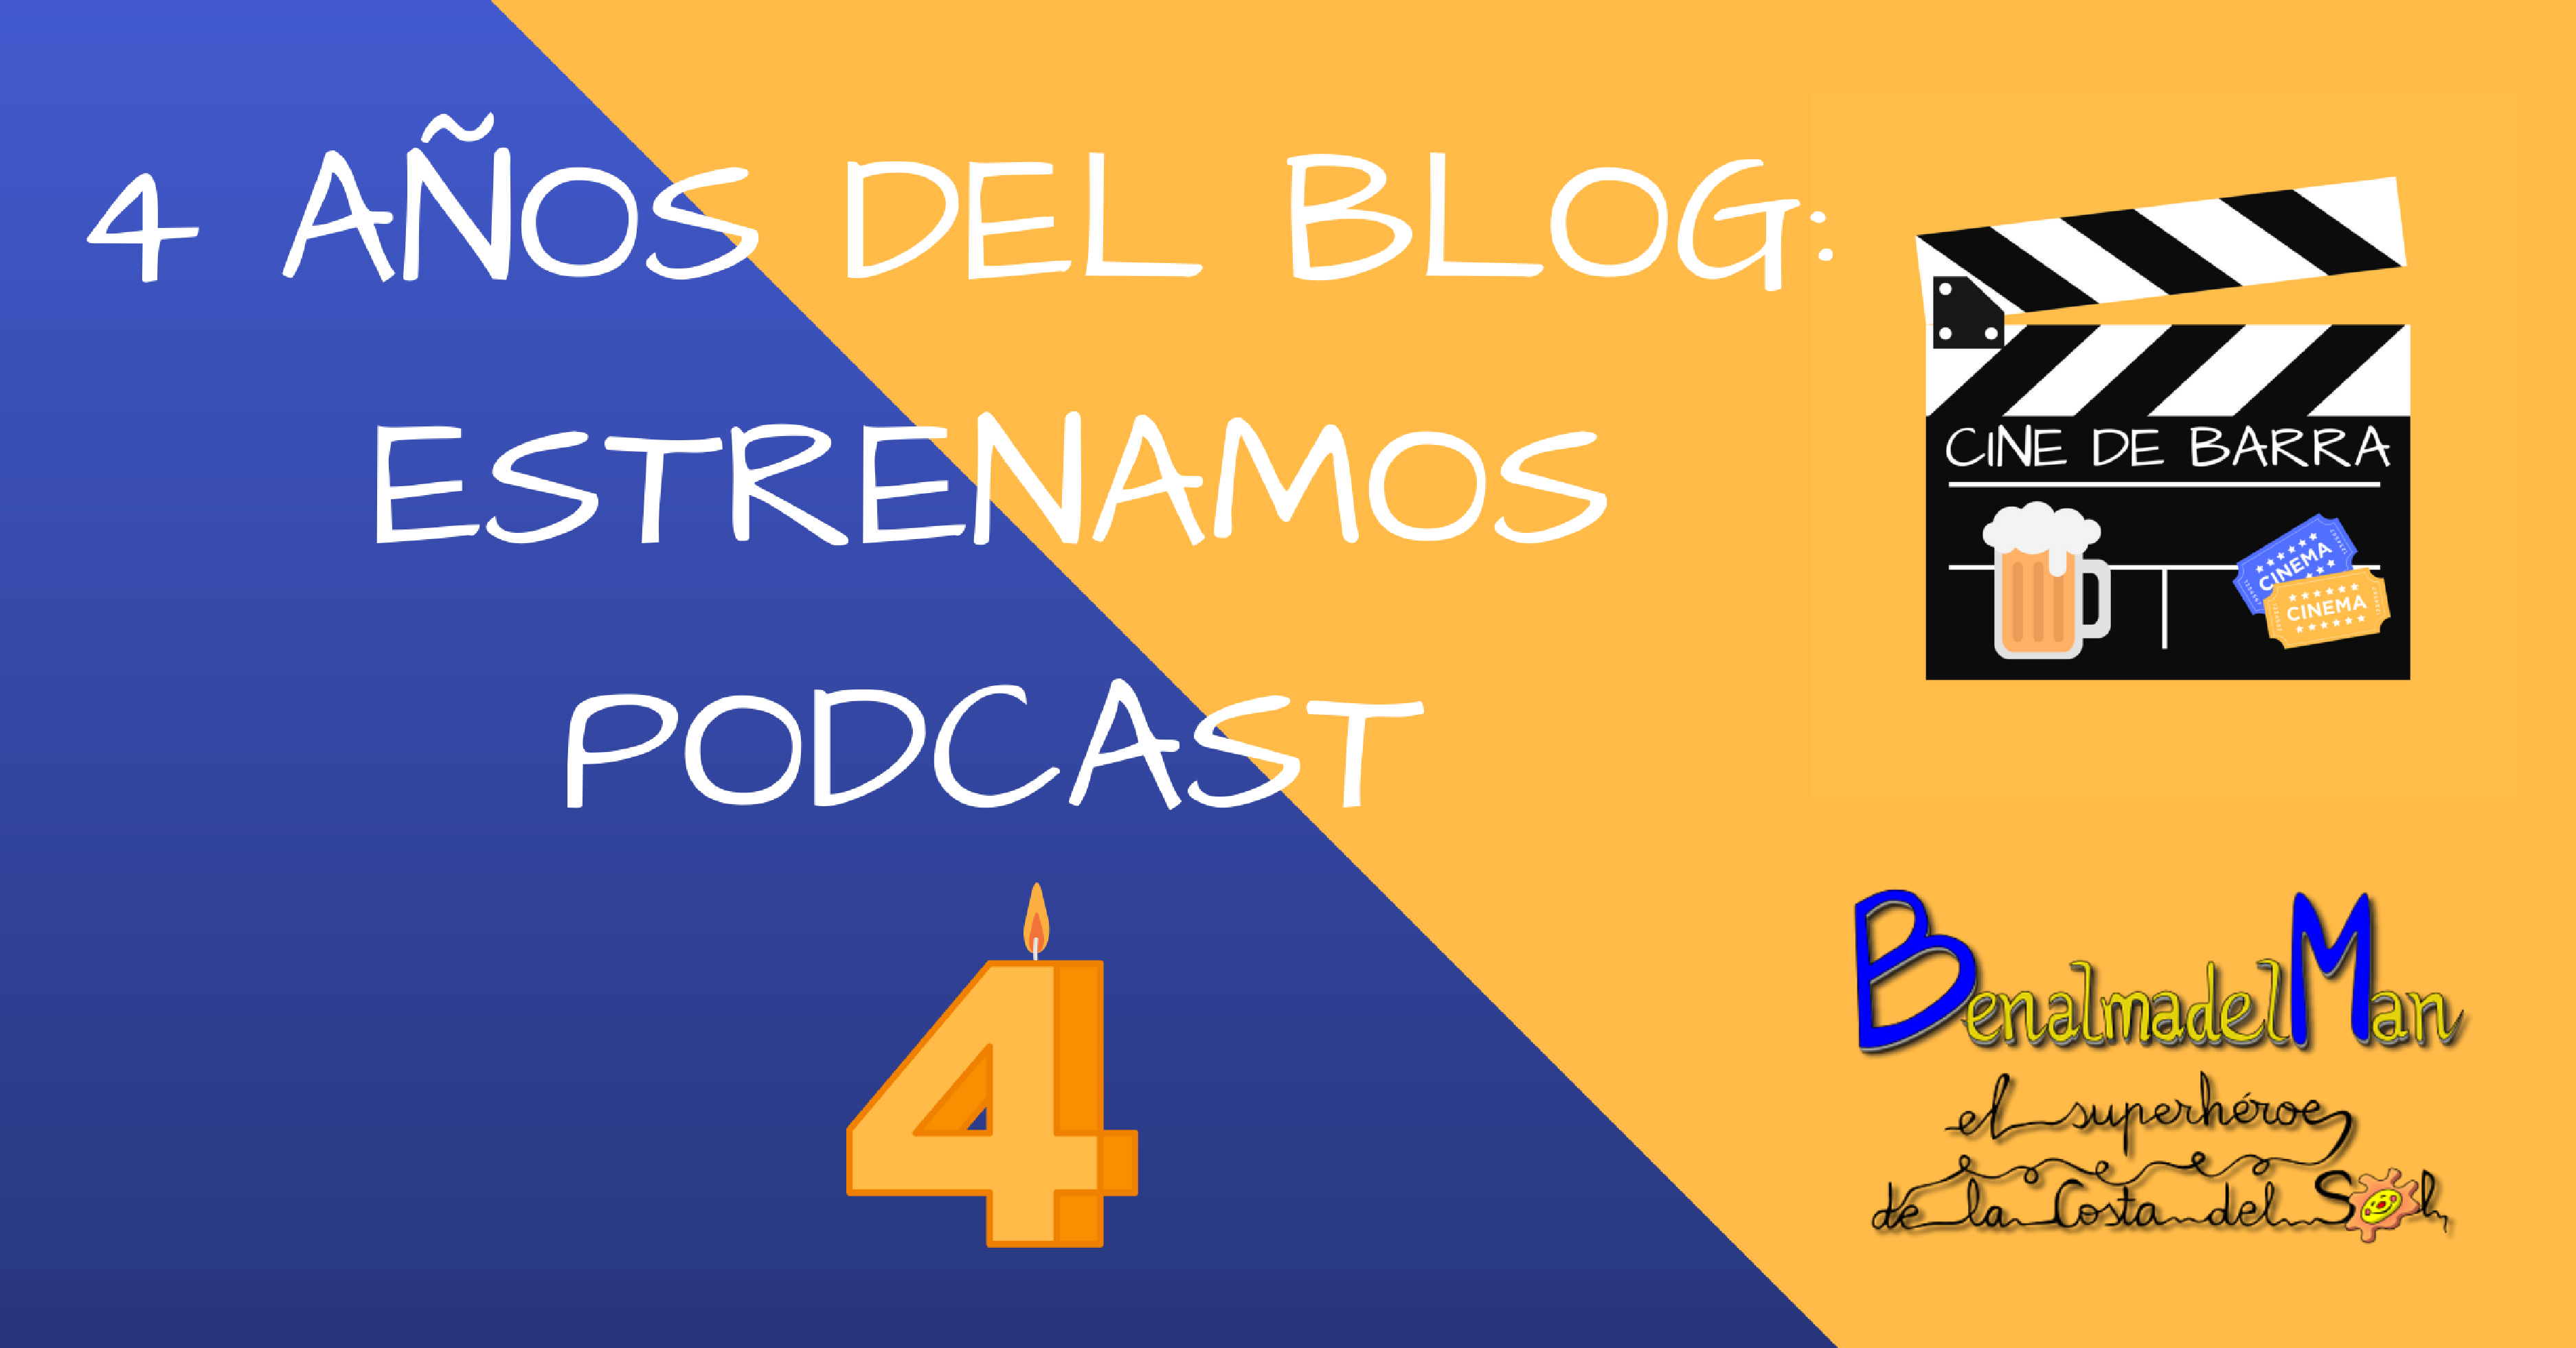 4 años de Benalmadelman: Estrenamos podcast